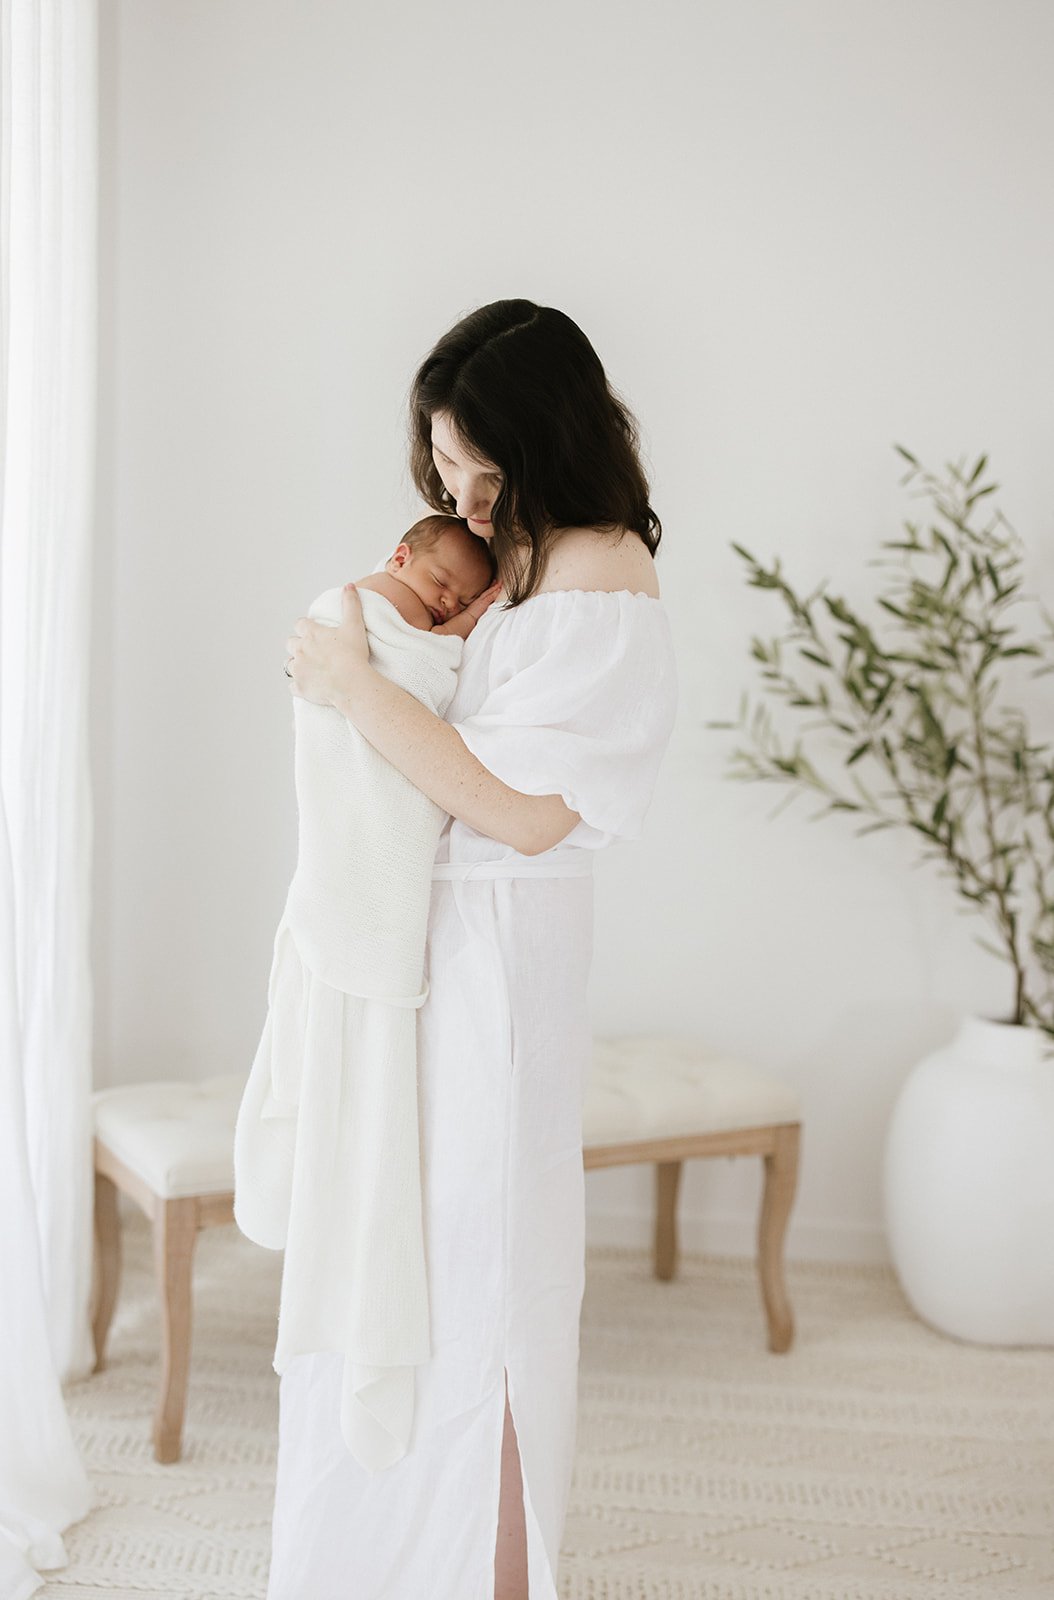  new mum cuddling her newborn baby both dressed in white 